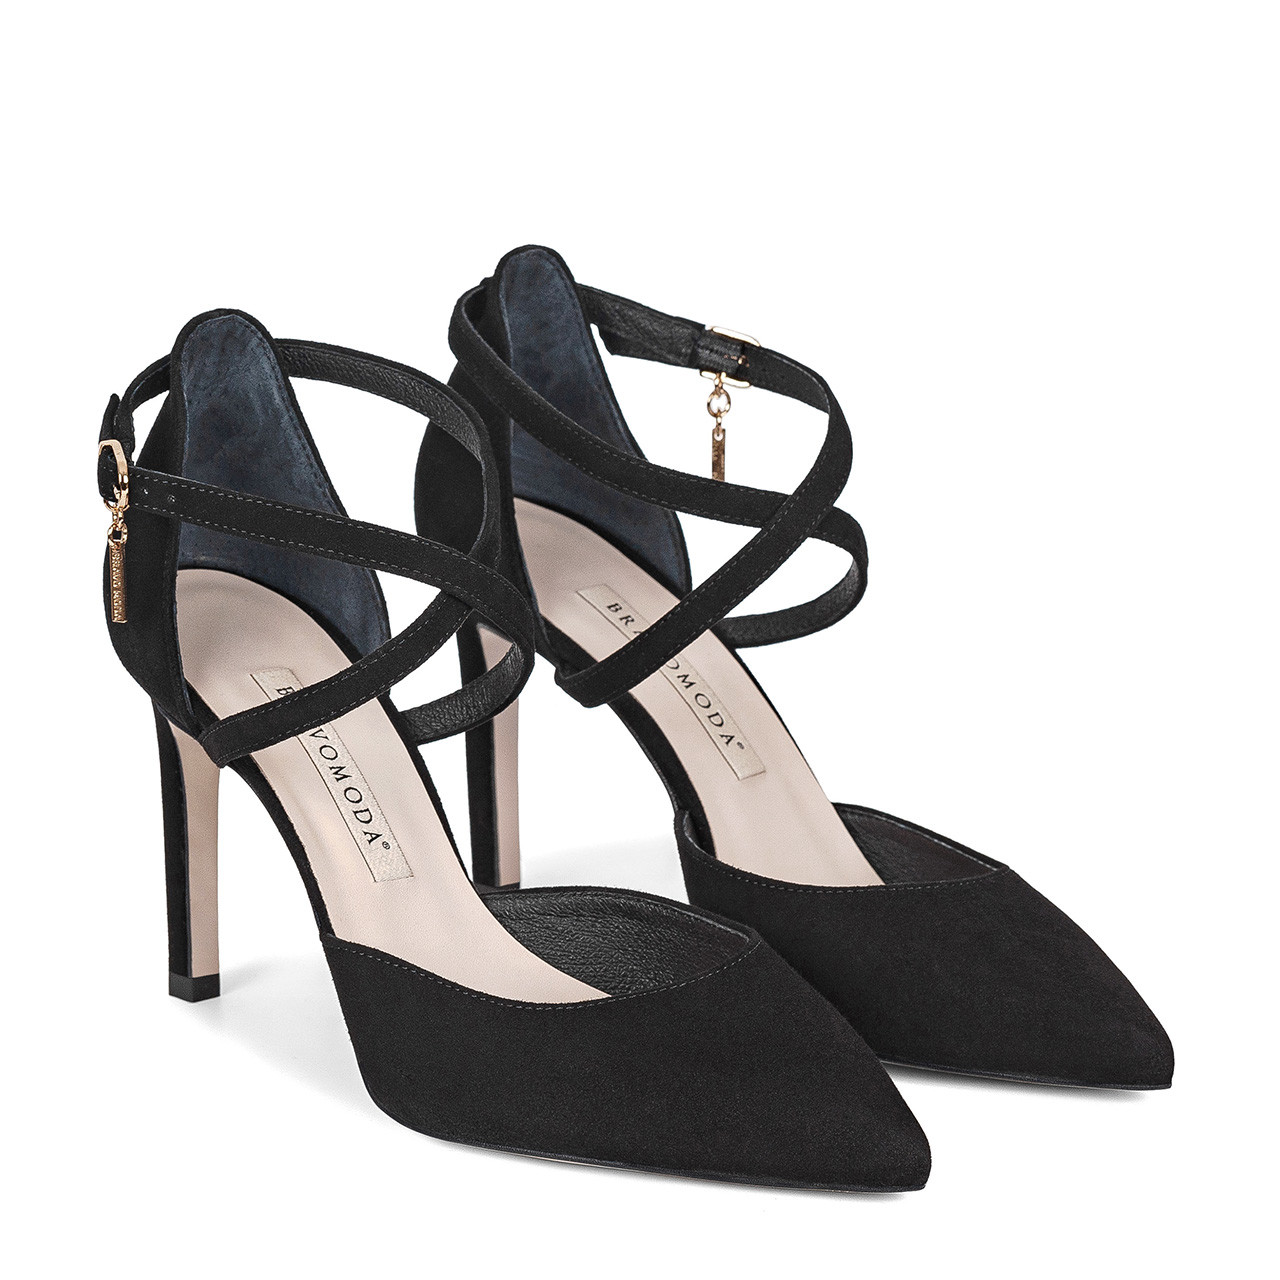 Calla Shoes | Sophia | Black suede high heels